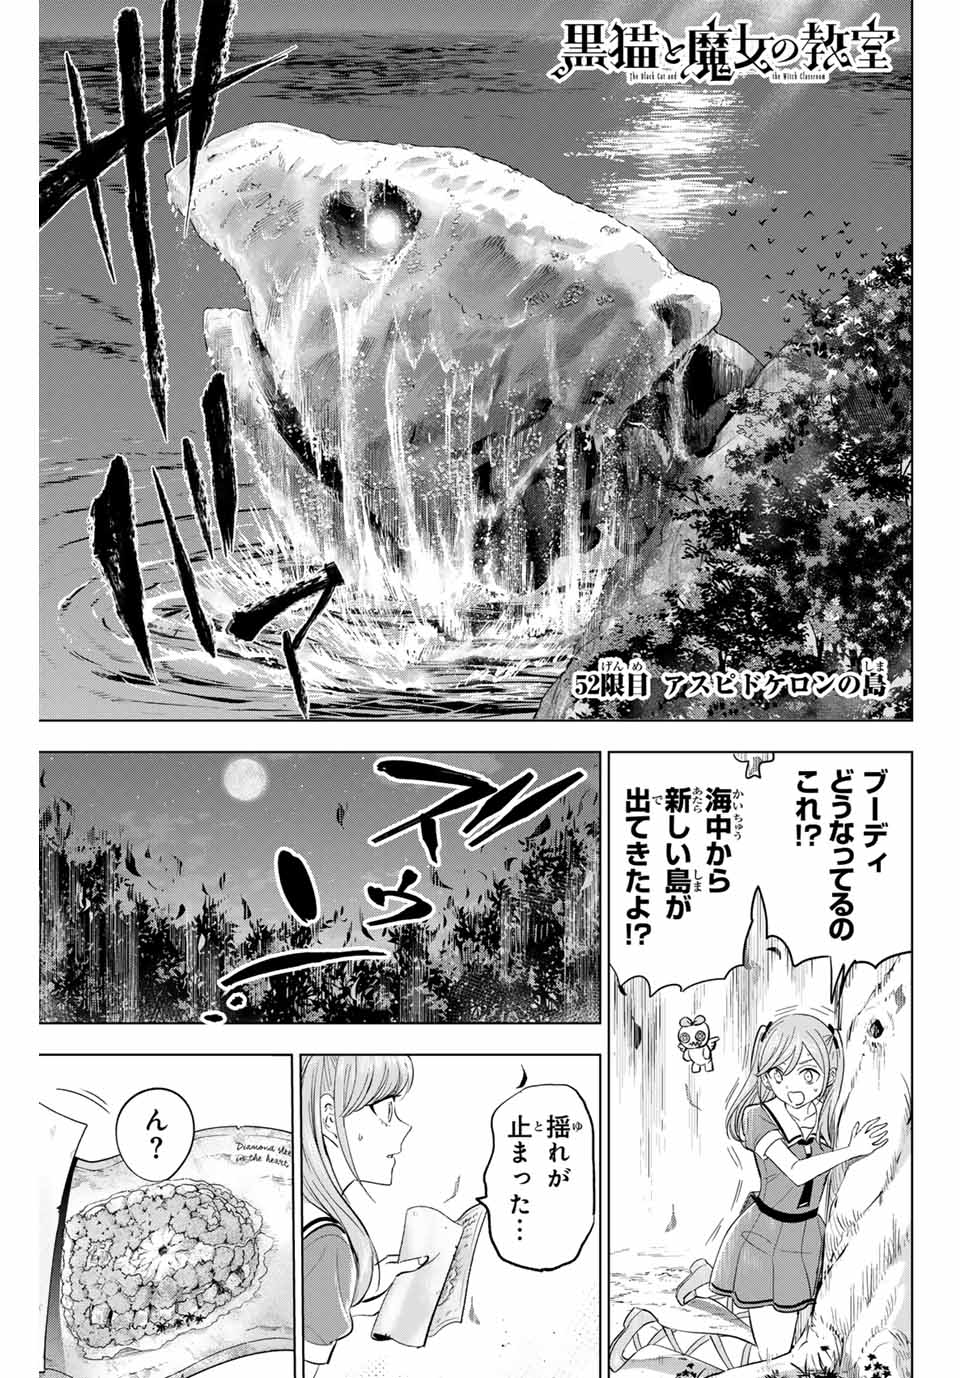 Kuroneko to Majo no Kyoushitsu - Chapter 52 - Page 1